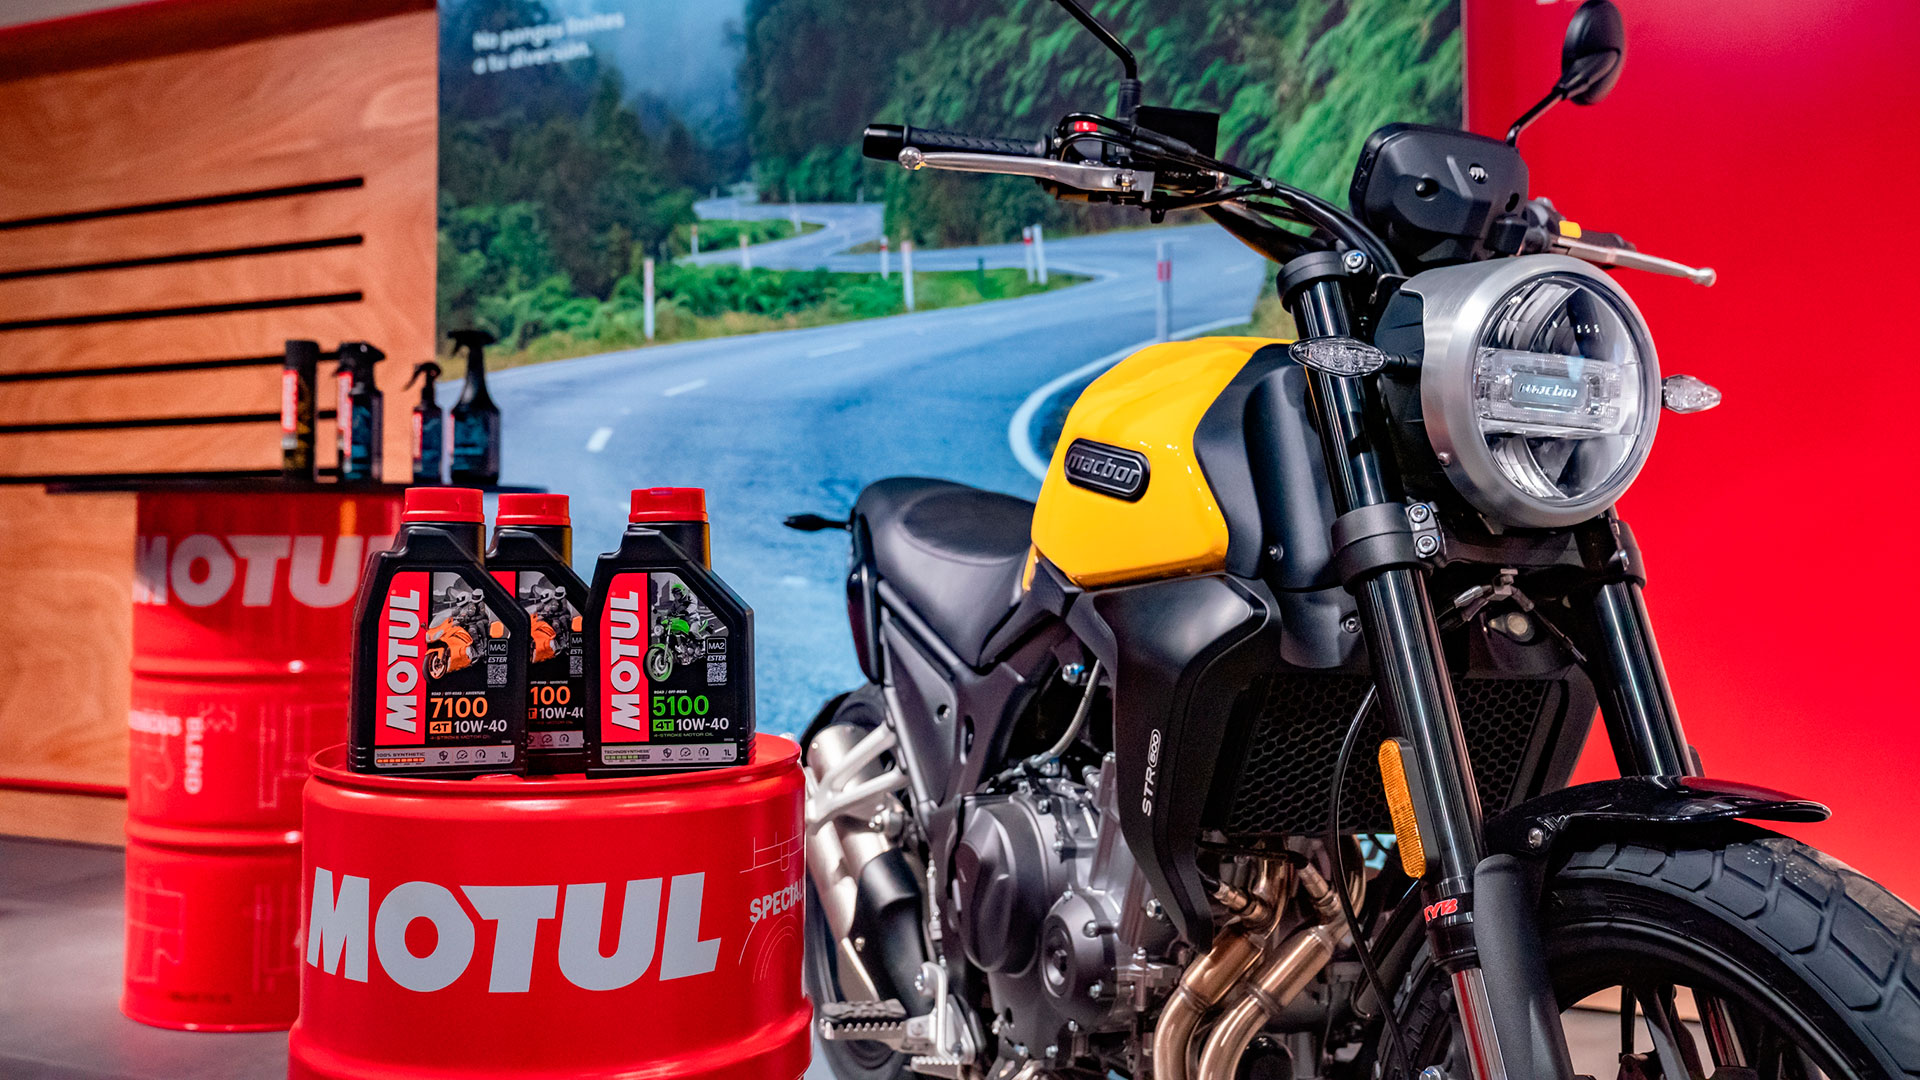 Macbor confía en Motul como proveedor de lubricantes y productos para el cuidado de la moto